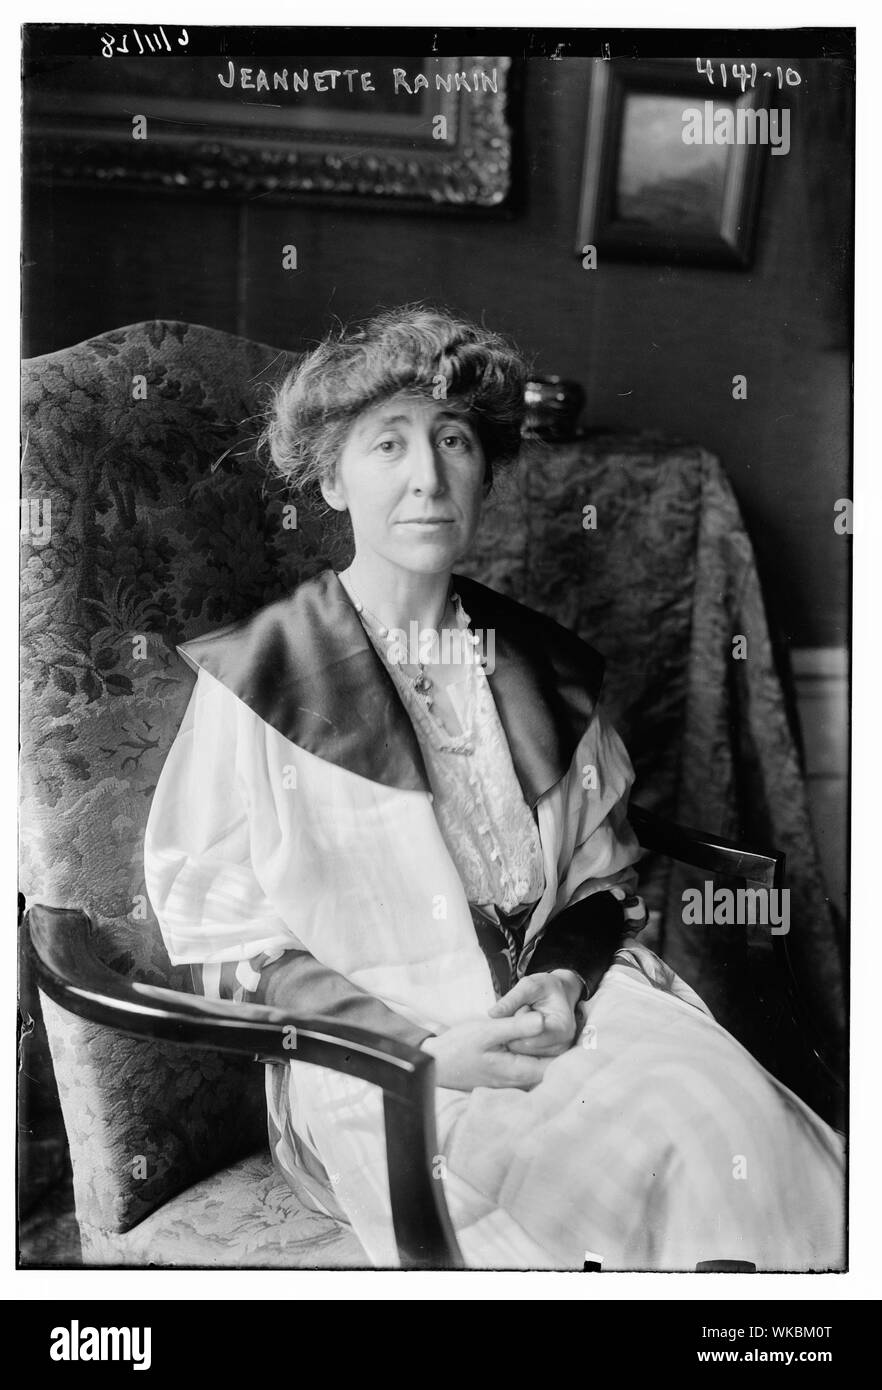 Jeannette Rankin Pickering (1880-1973), Mitglied des Abgeordnetenhauses, die 1916 als erste Frau in den US-Kongress zu dienen gewählt wurde. Glas negative 5 x 7 in. oder kleiner. Stockfoto